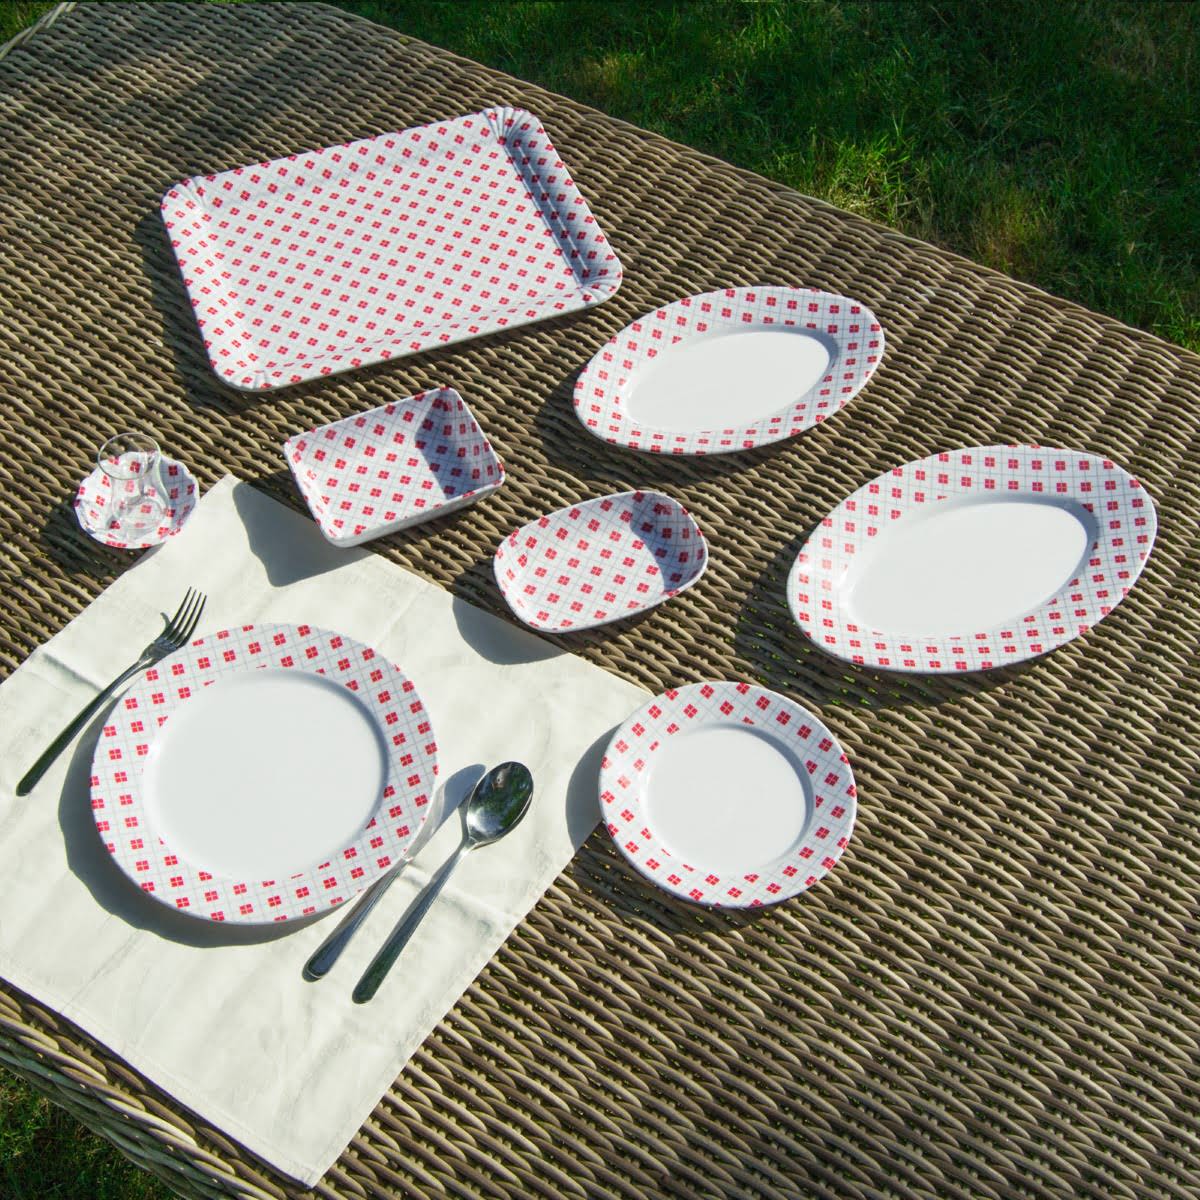 4 kişilik 18 parça melamin piknik seti kolay taşınır kolay temizlenir ve kullanılır